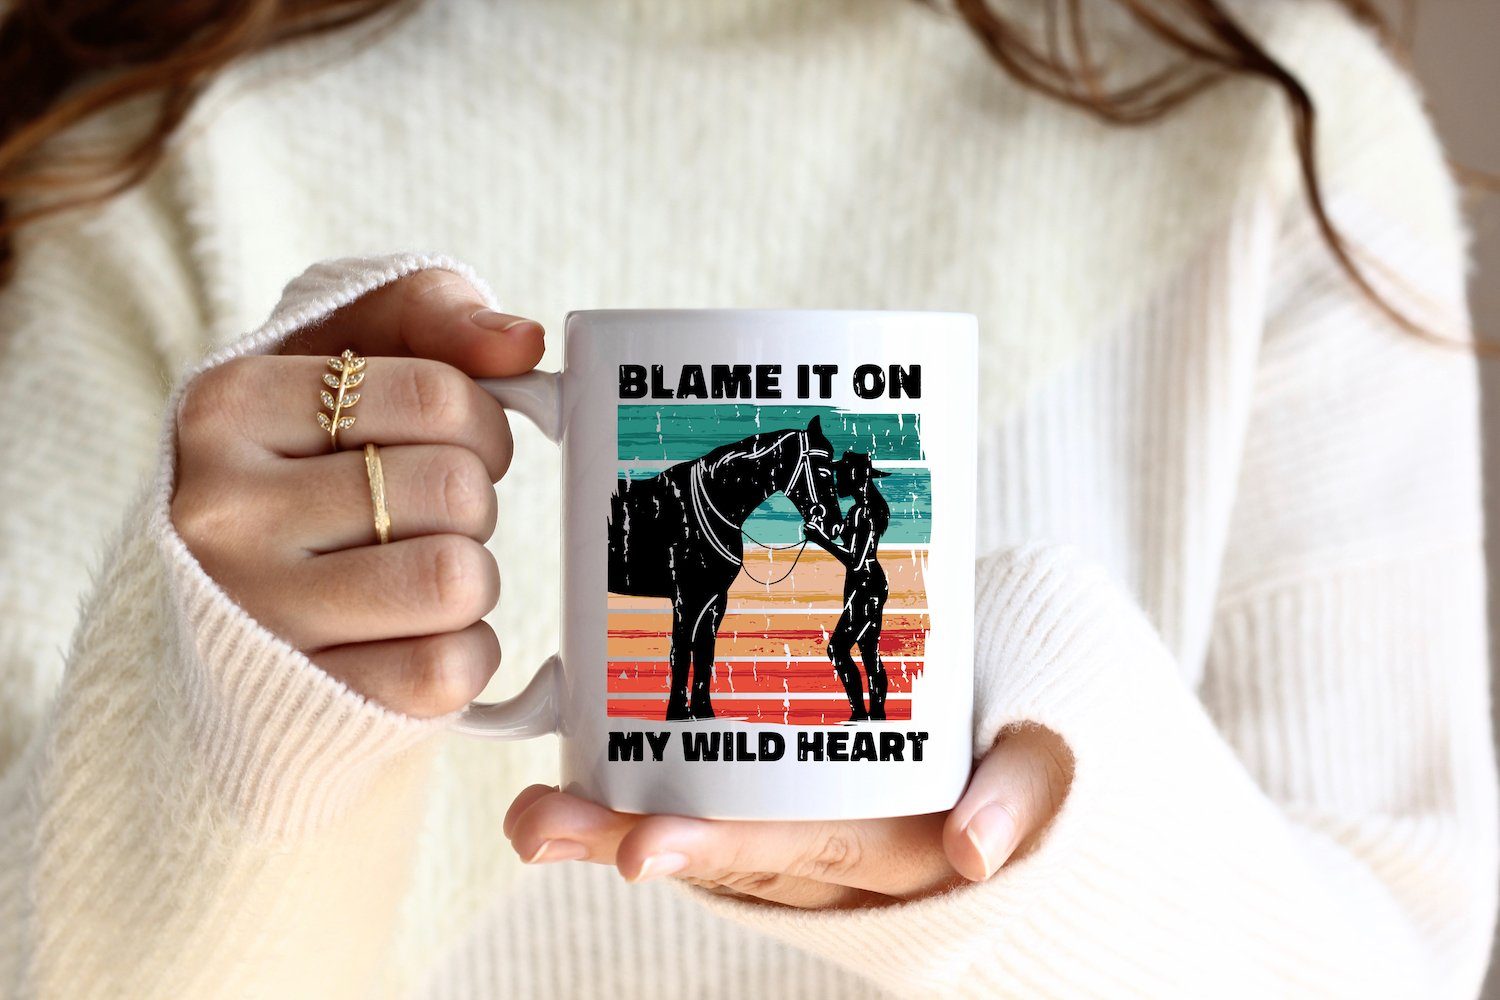 Pferd Geschenk, Wild My Heart It Keramik, Pferde On Motiv Blame Youth Designz mit Kaffeetasse Tasse Weiss/Schwarz